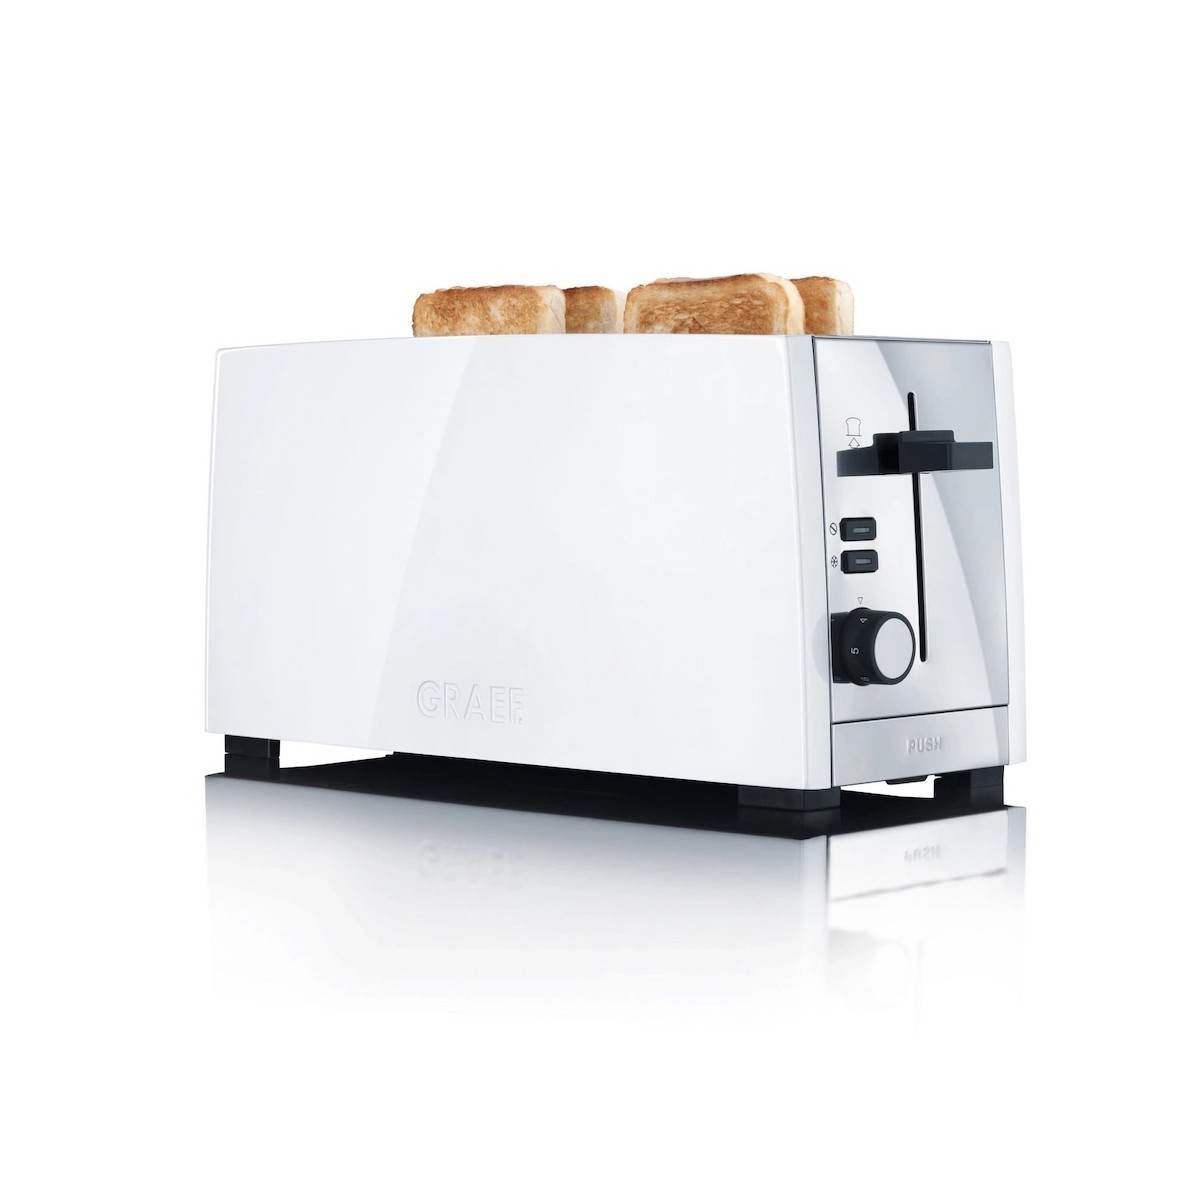 GRAEF TO101 toaster - white